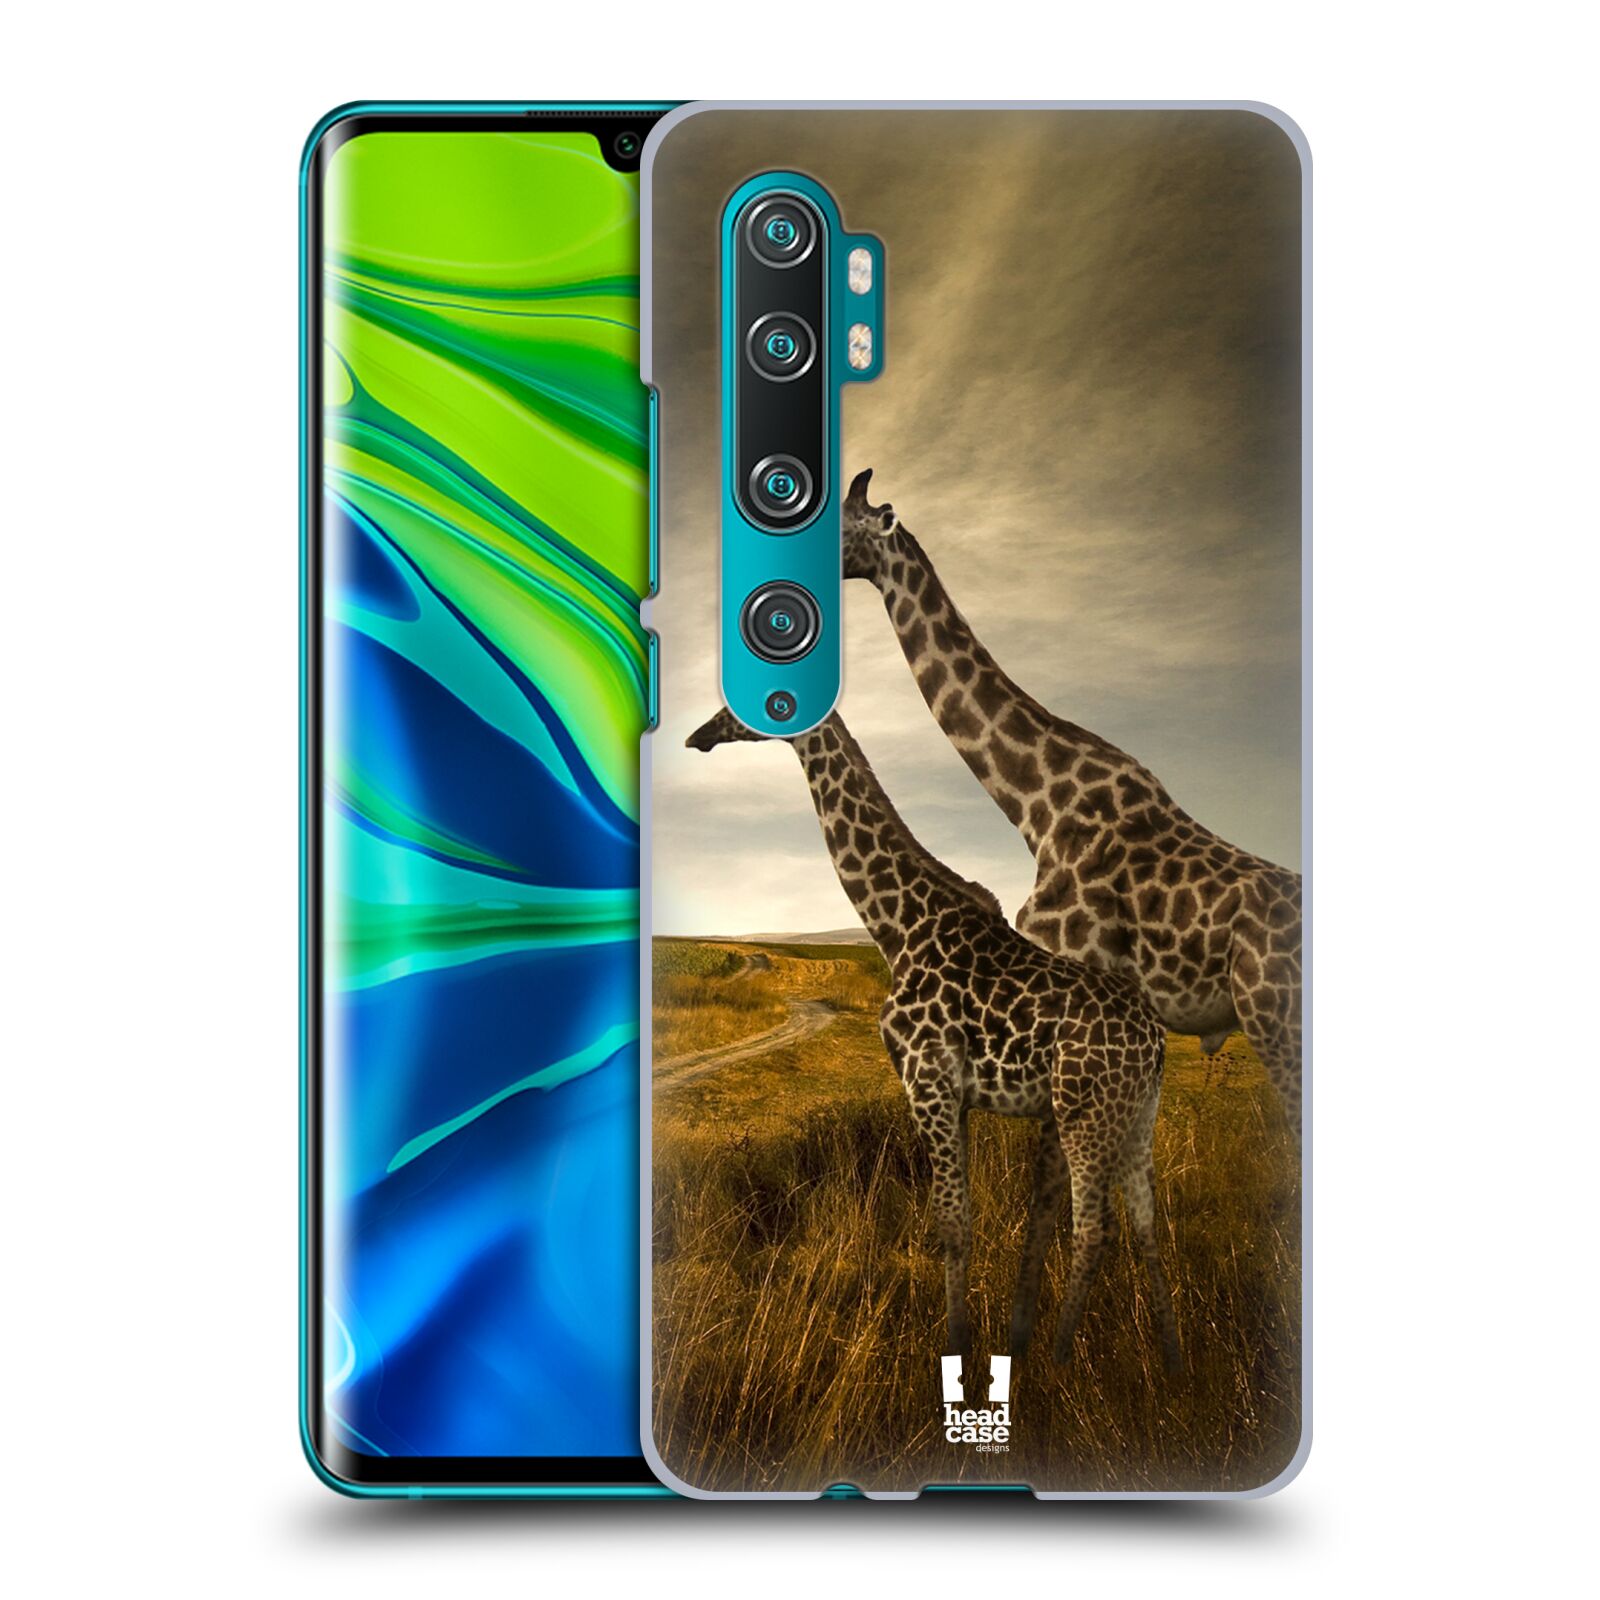 Zadní obal pro mobil Xiaomi Mi Note 10 / Mi Note 10 PRO - HEAD CASE - Svět zvířat žirafy